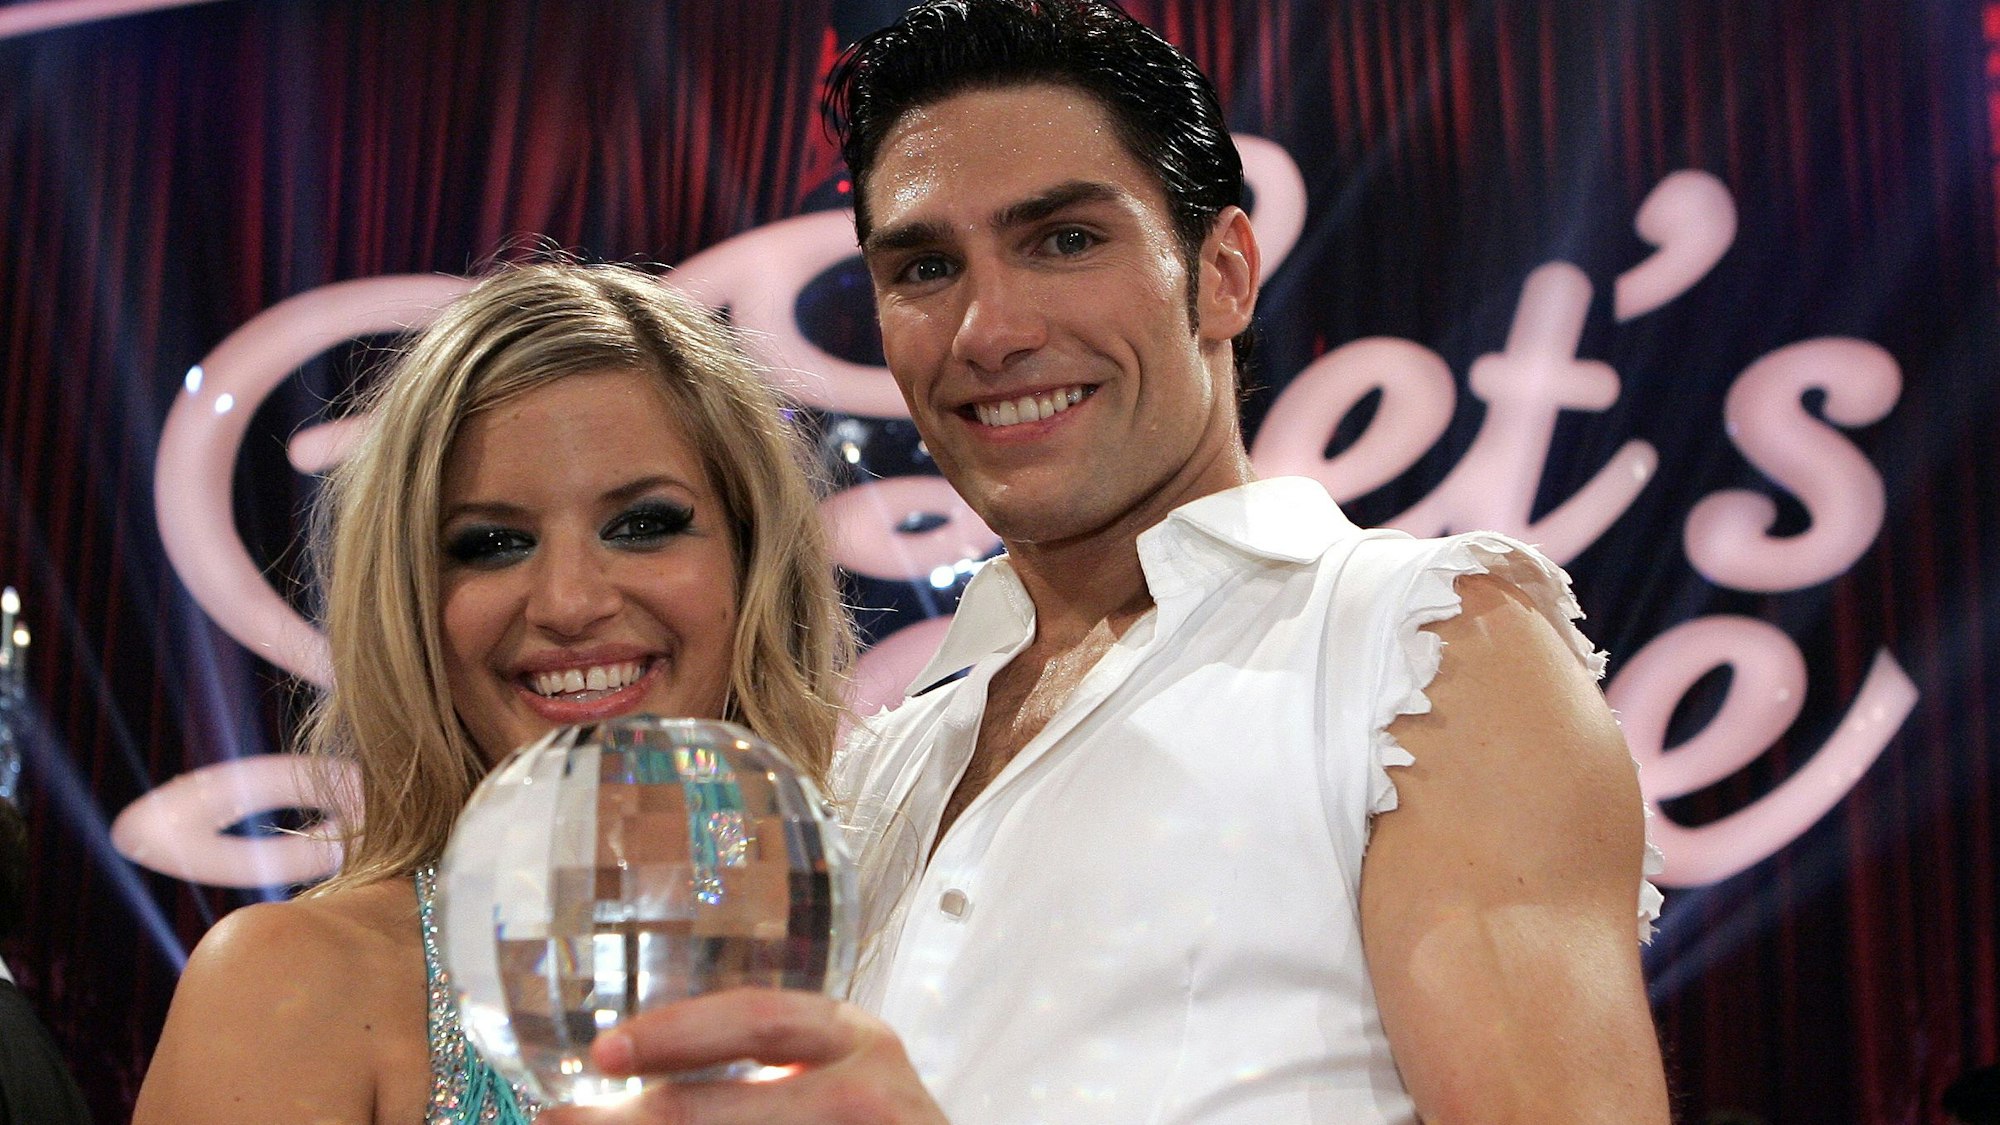 Schauspielerin Susan Sideropoulos und ihr Tanzpartner Christian Polanc mit dem Siegerpokal der RTL-Tanzshow „Let's Dance“, hier im Juni 2007 in Köln.